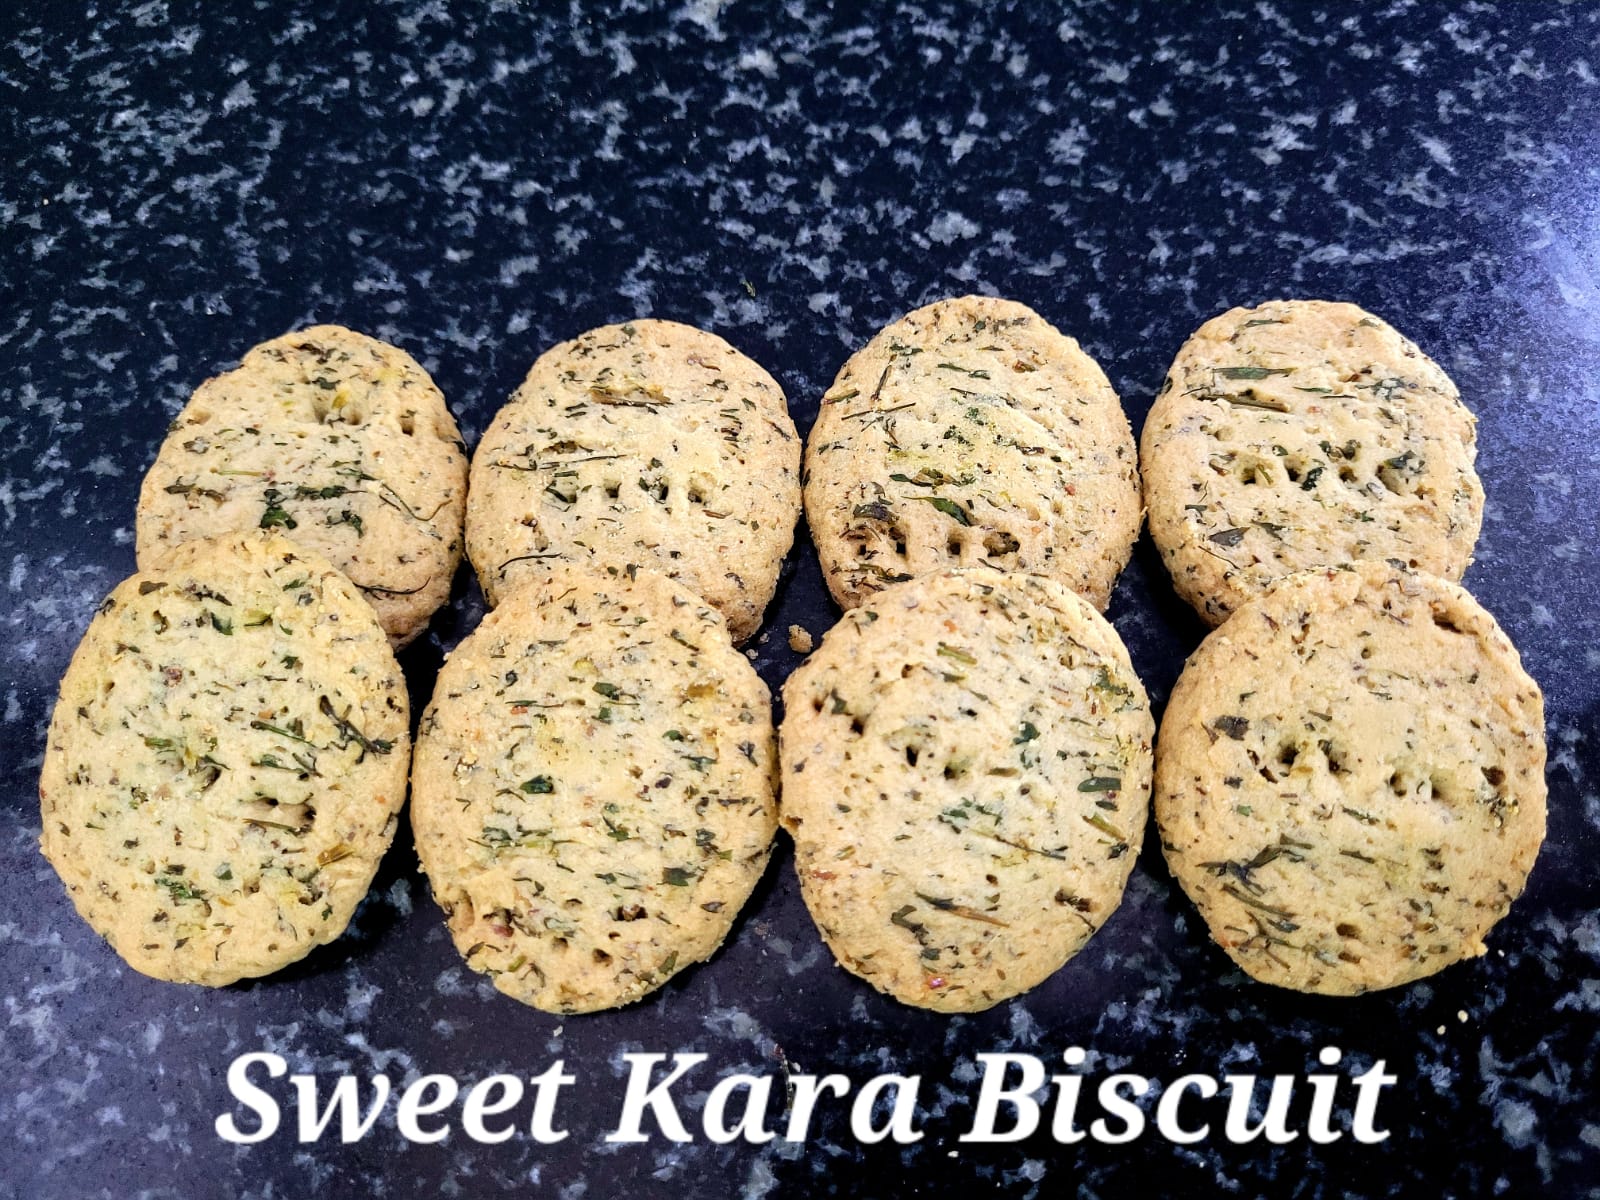 Sweet Kara biscuits